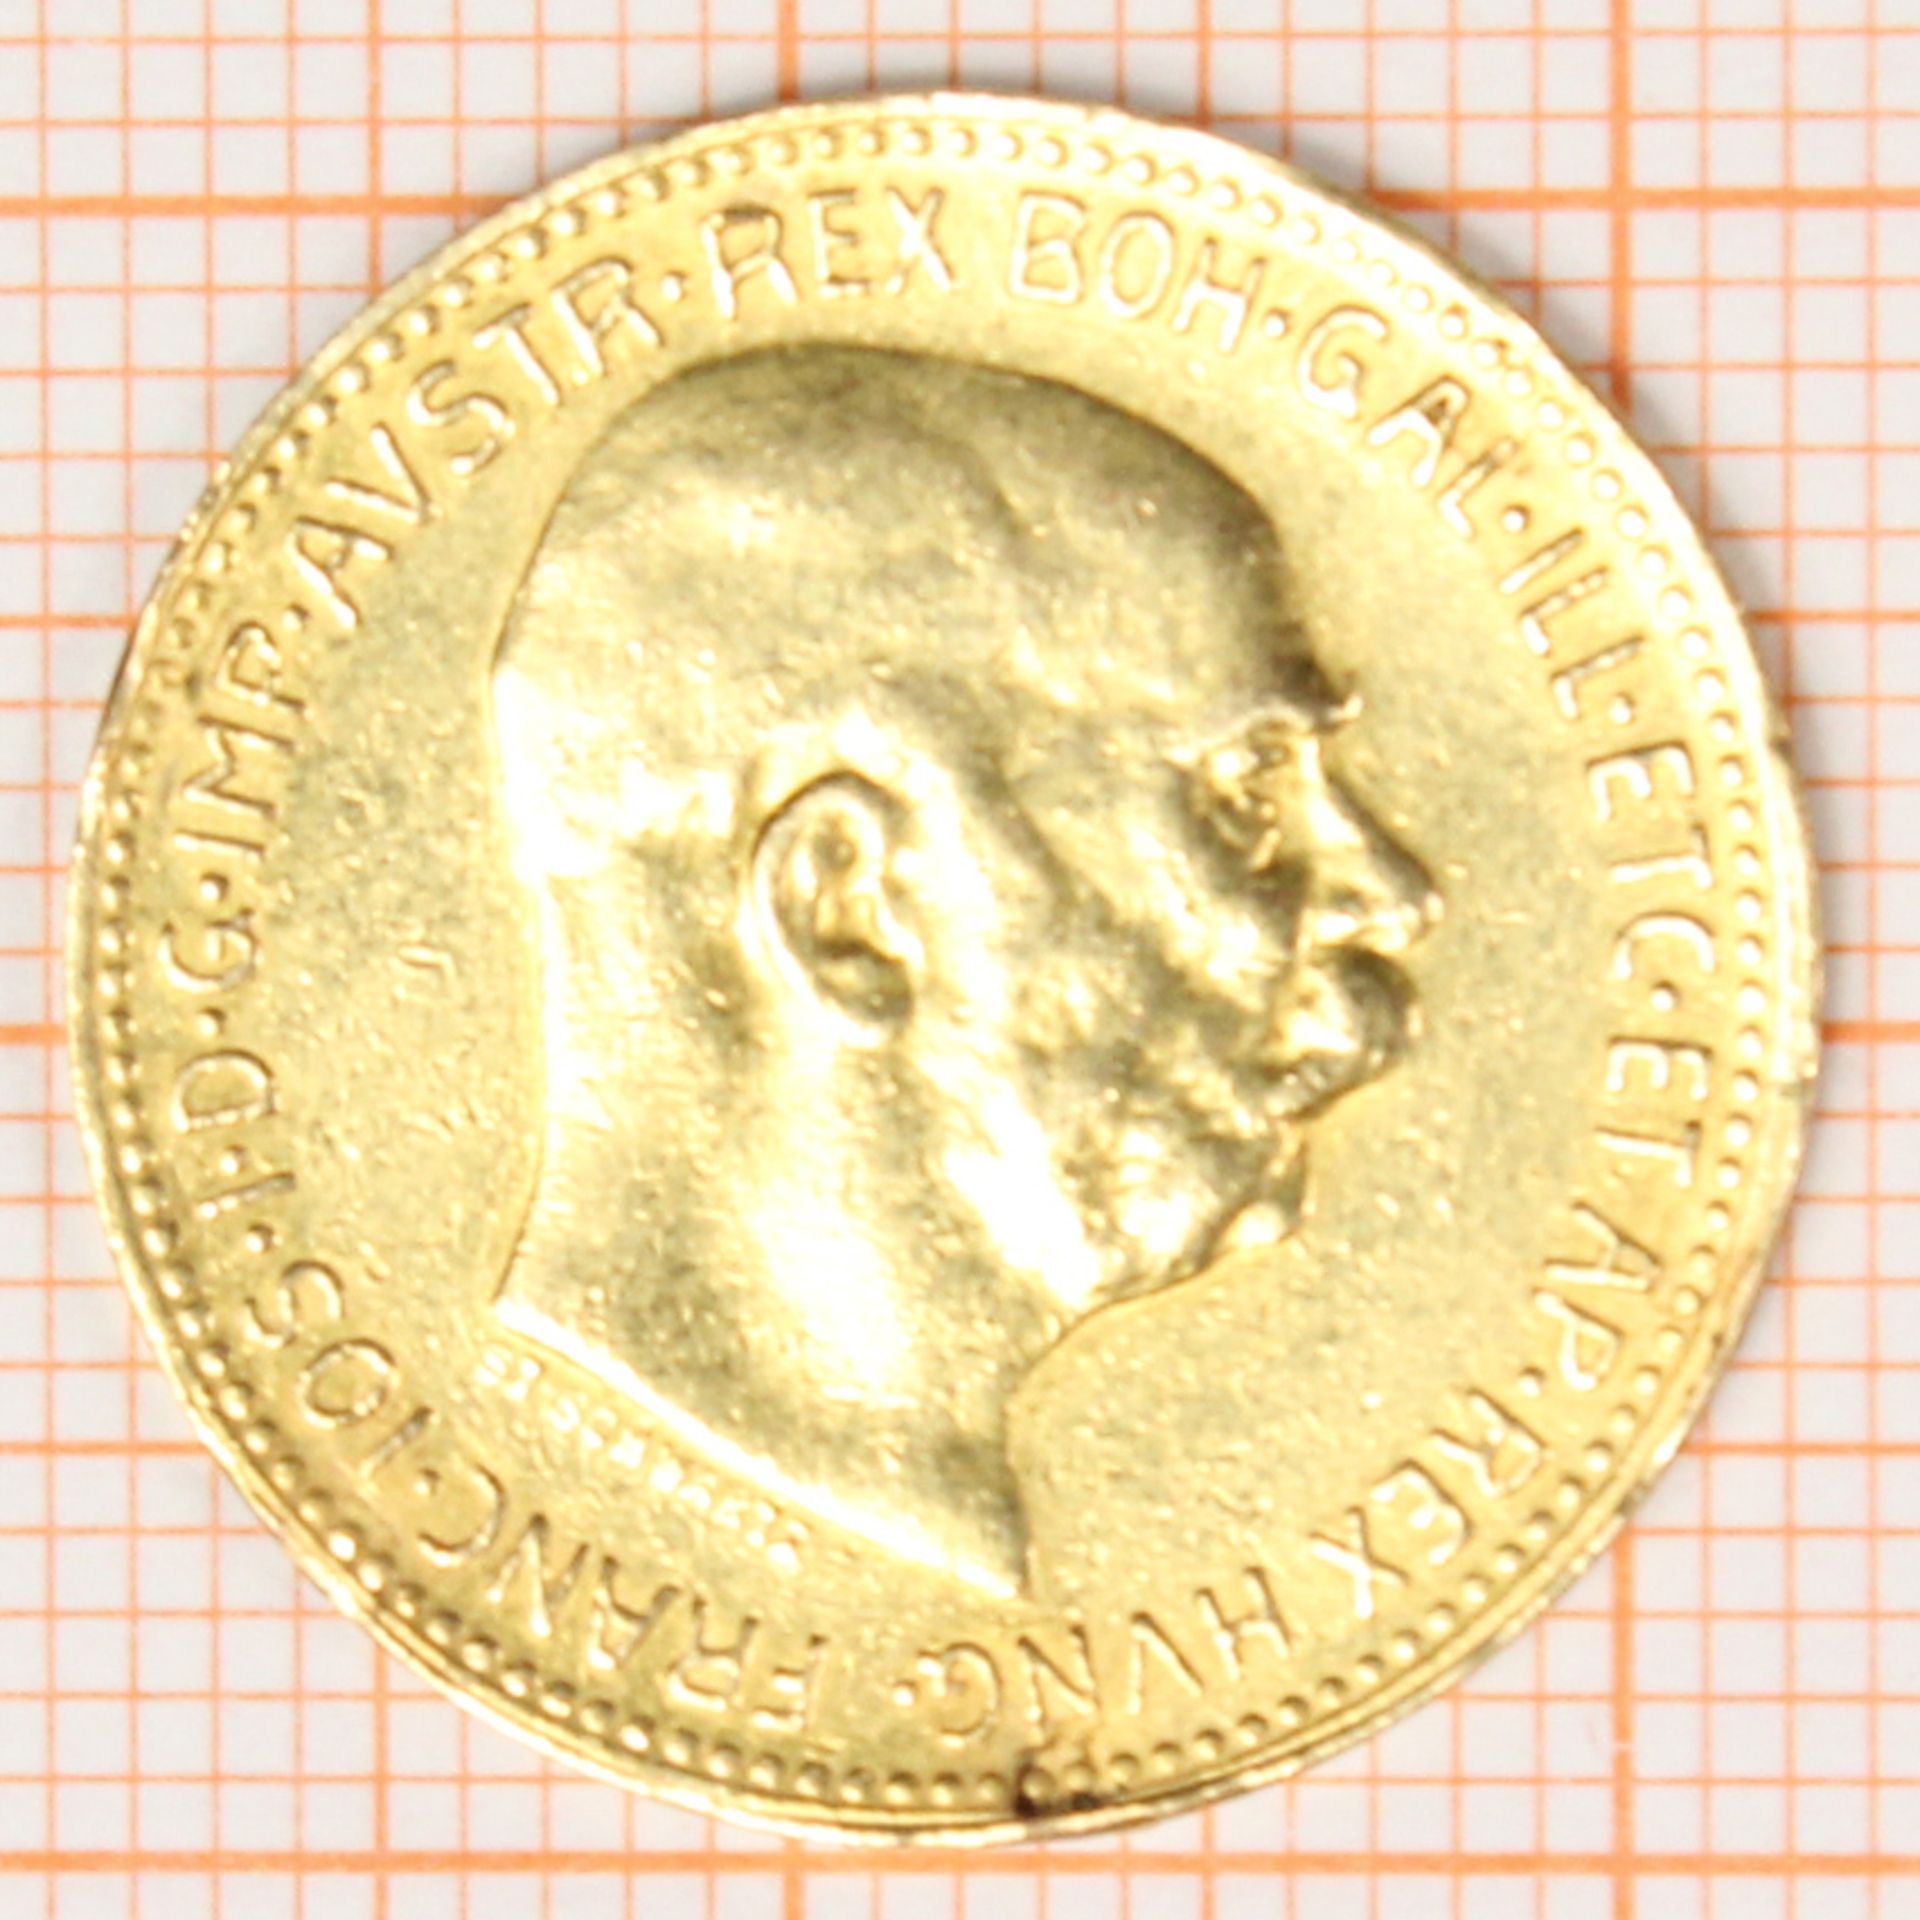 Goldmünze. 20 Kronen. Österreich. Kaiser Franz Joseph. 1915. - Bild 3 aus 4